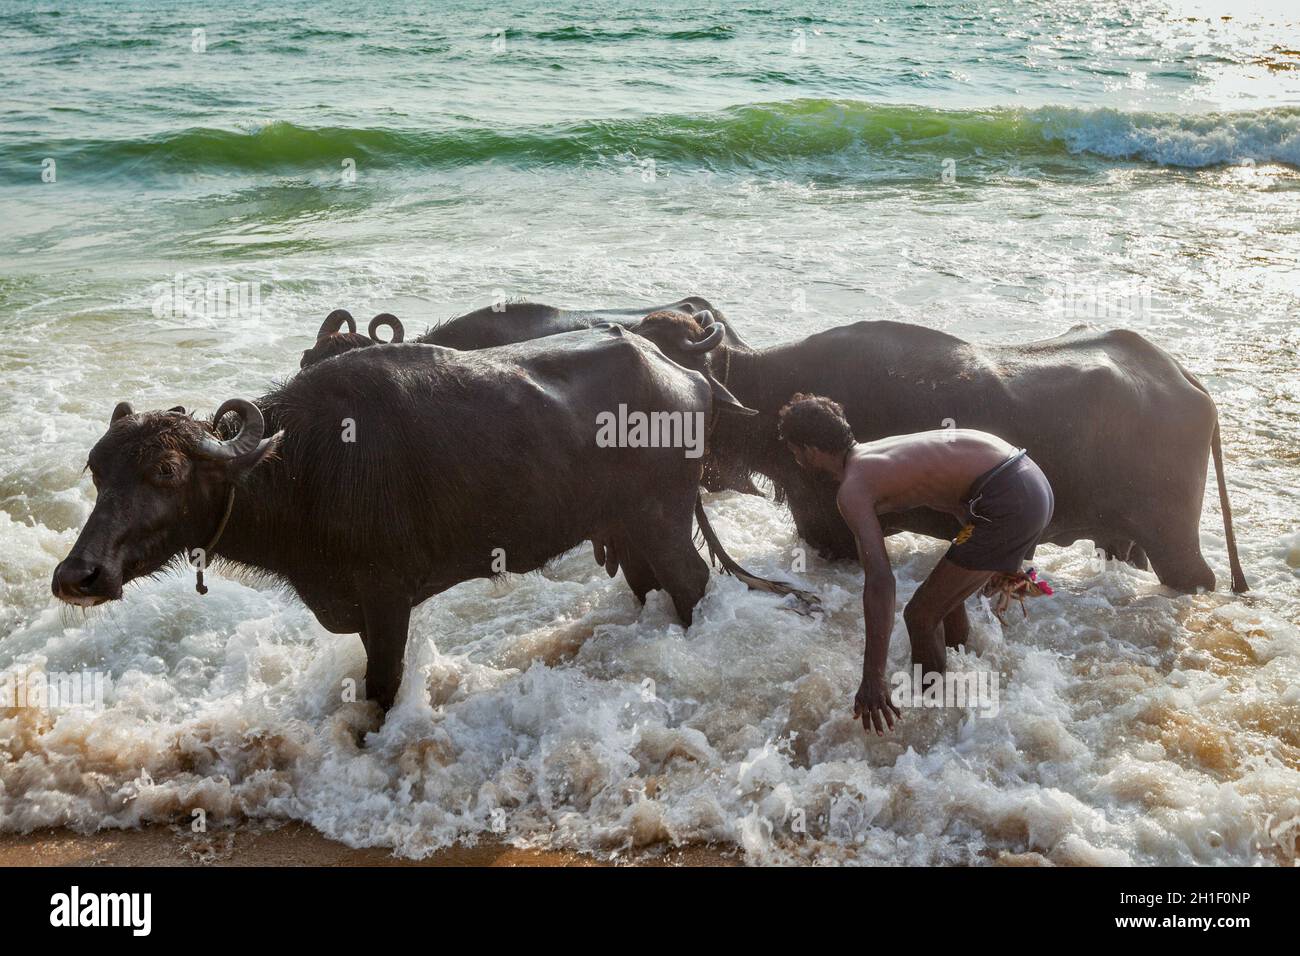 CHENNAI, INDE - 10 FÉVRIER 2013 : un homme fracassant des vaches en mer le matin sur la plage de Marina.La vache est un animal sacré dans l'hindouisme Banque D'Images